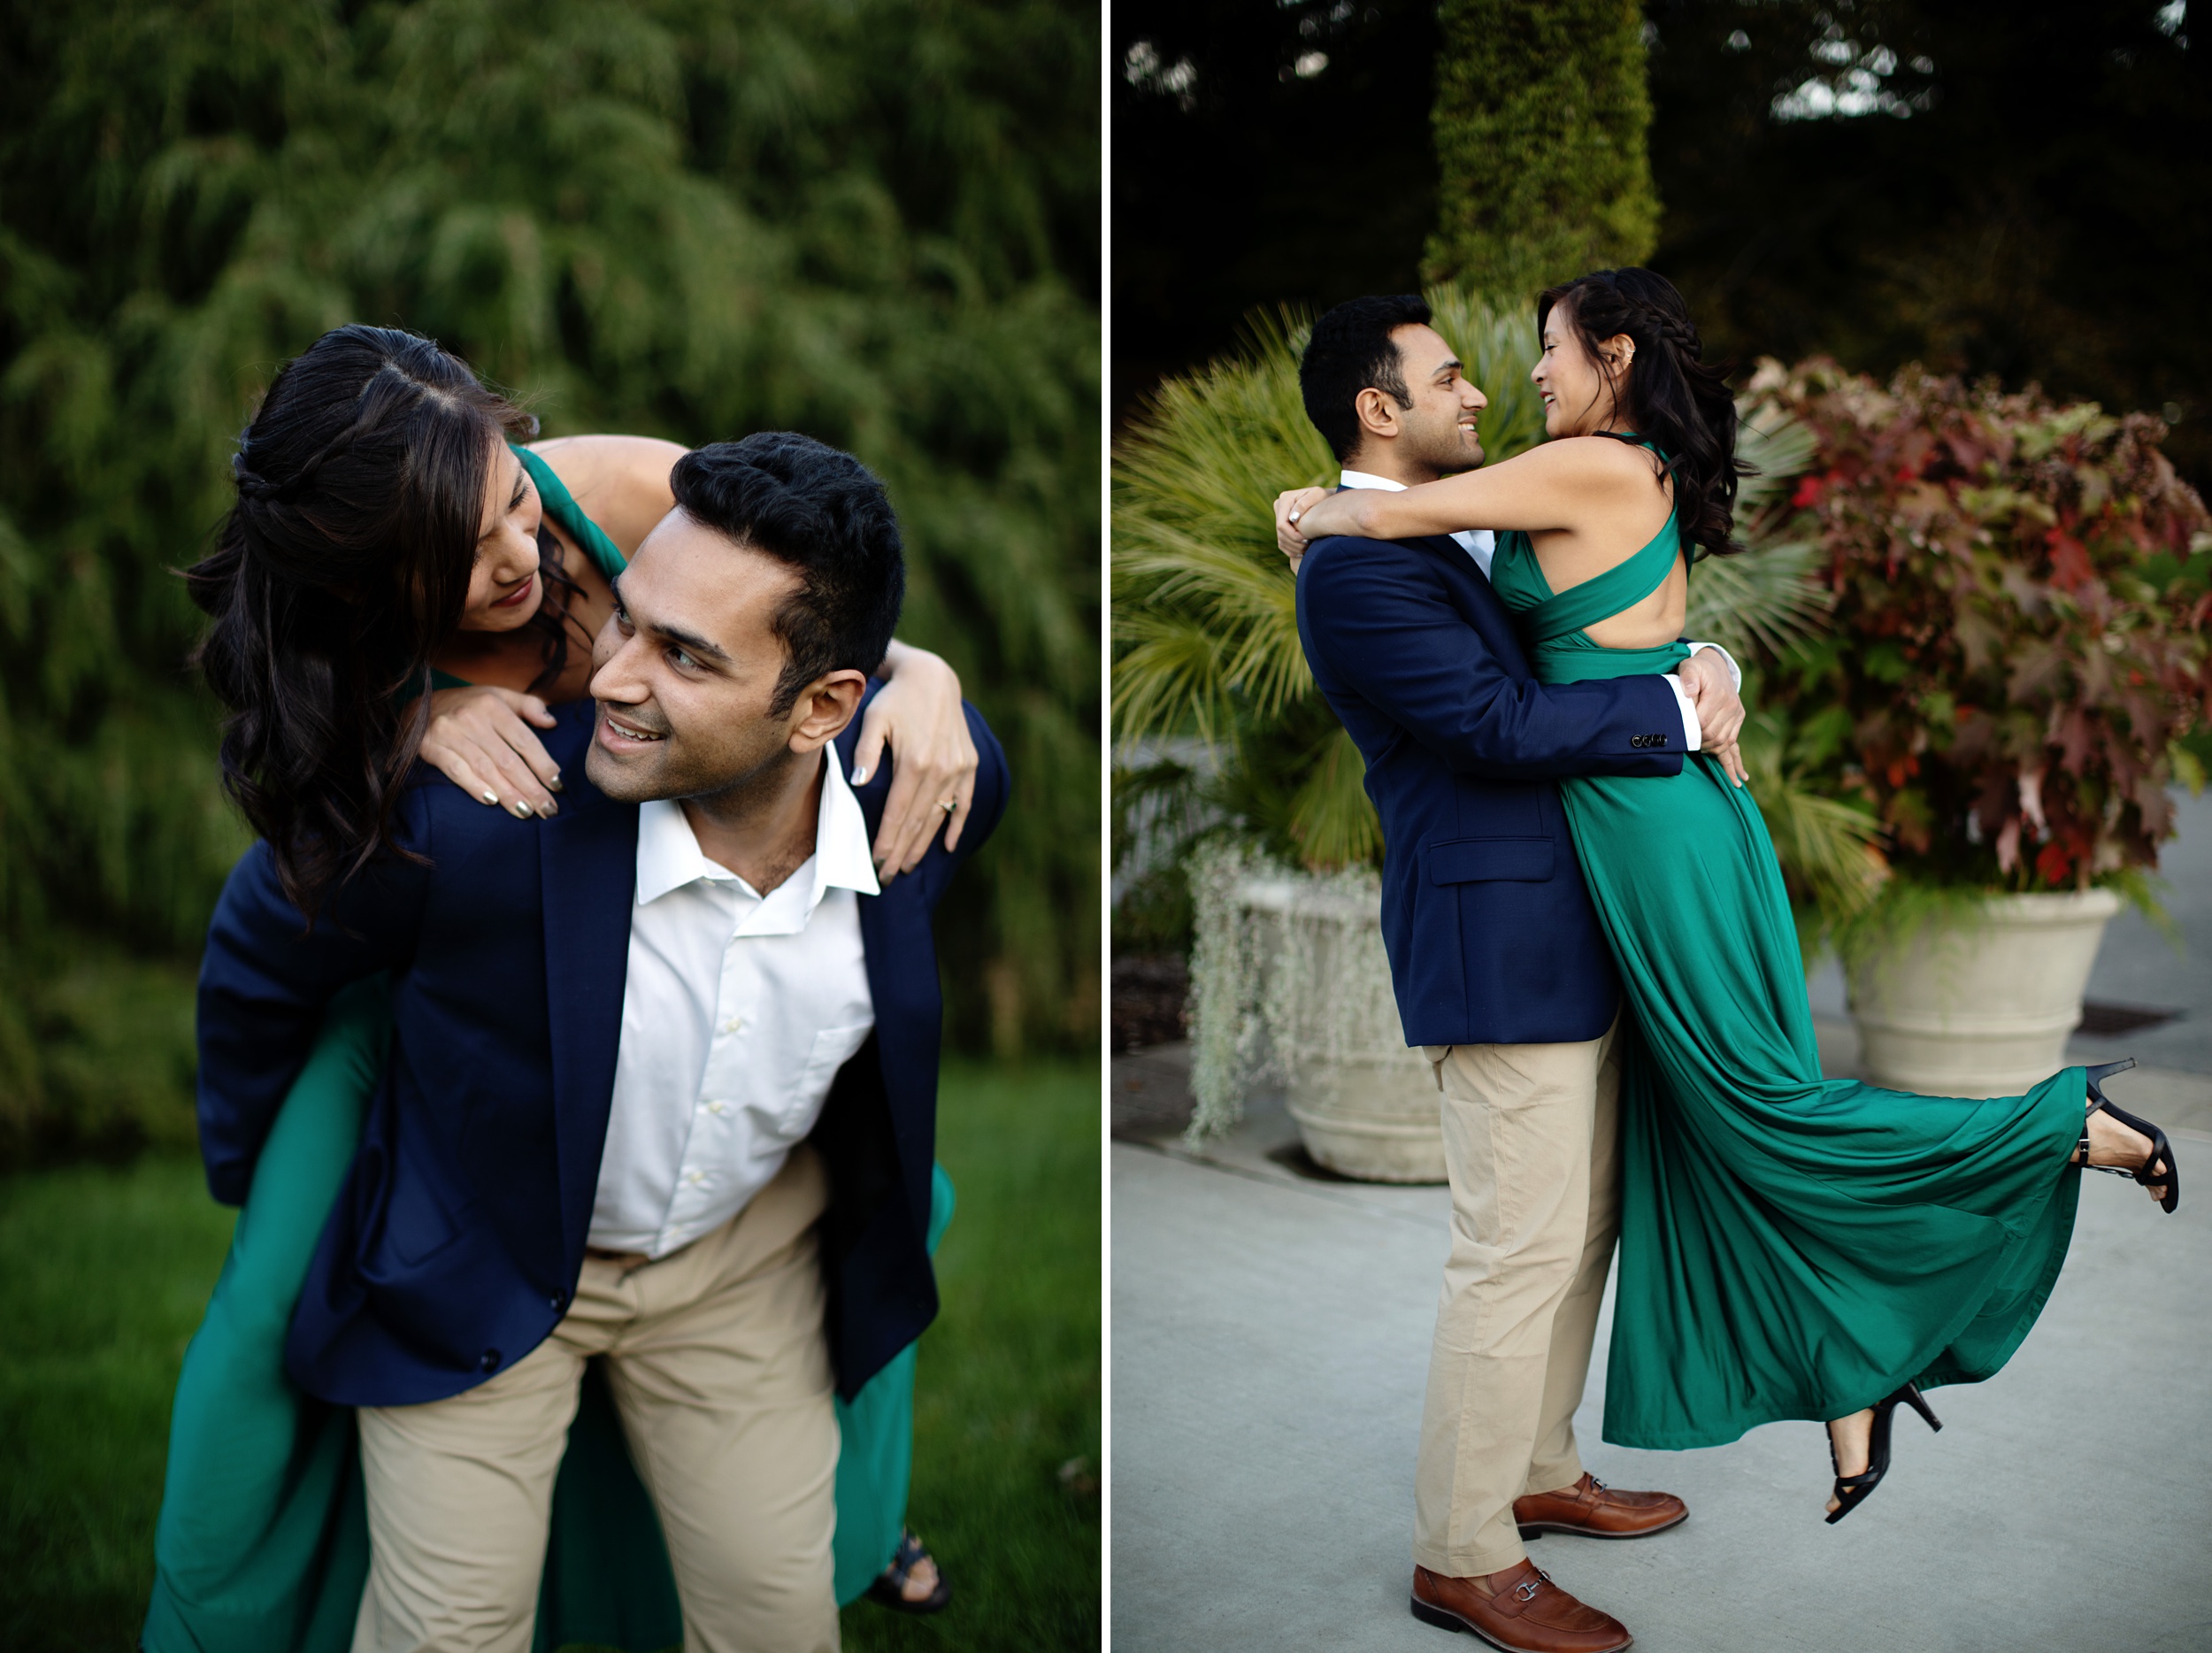 Longwood Gardens Engagement Photos-Philadelphia Wedding and Engagement Photographer